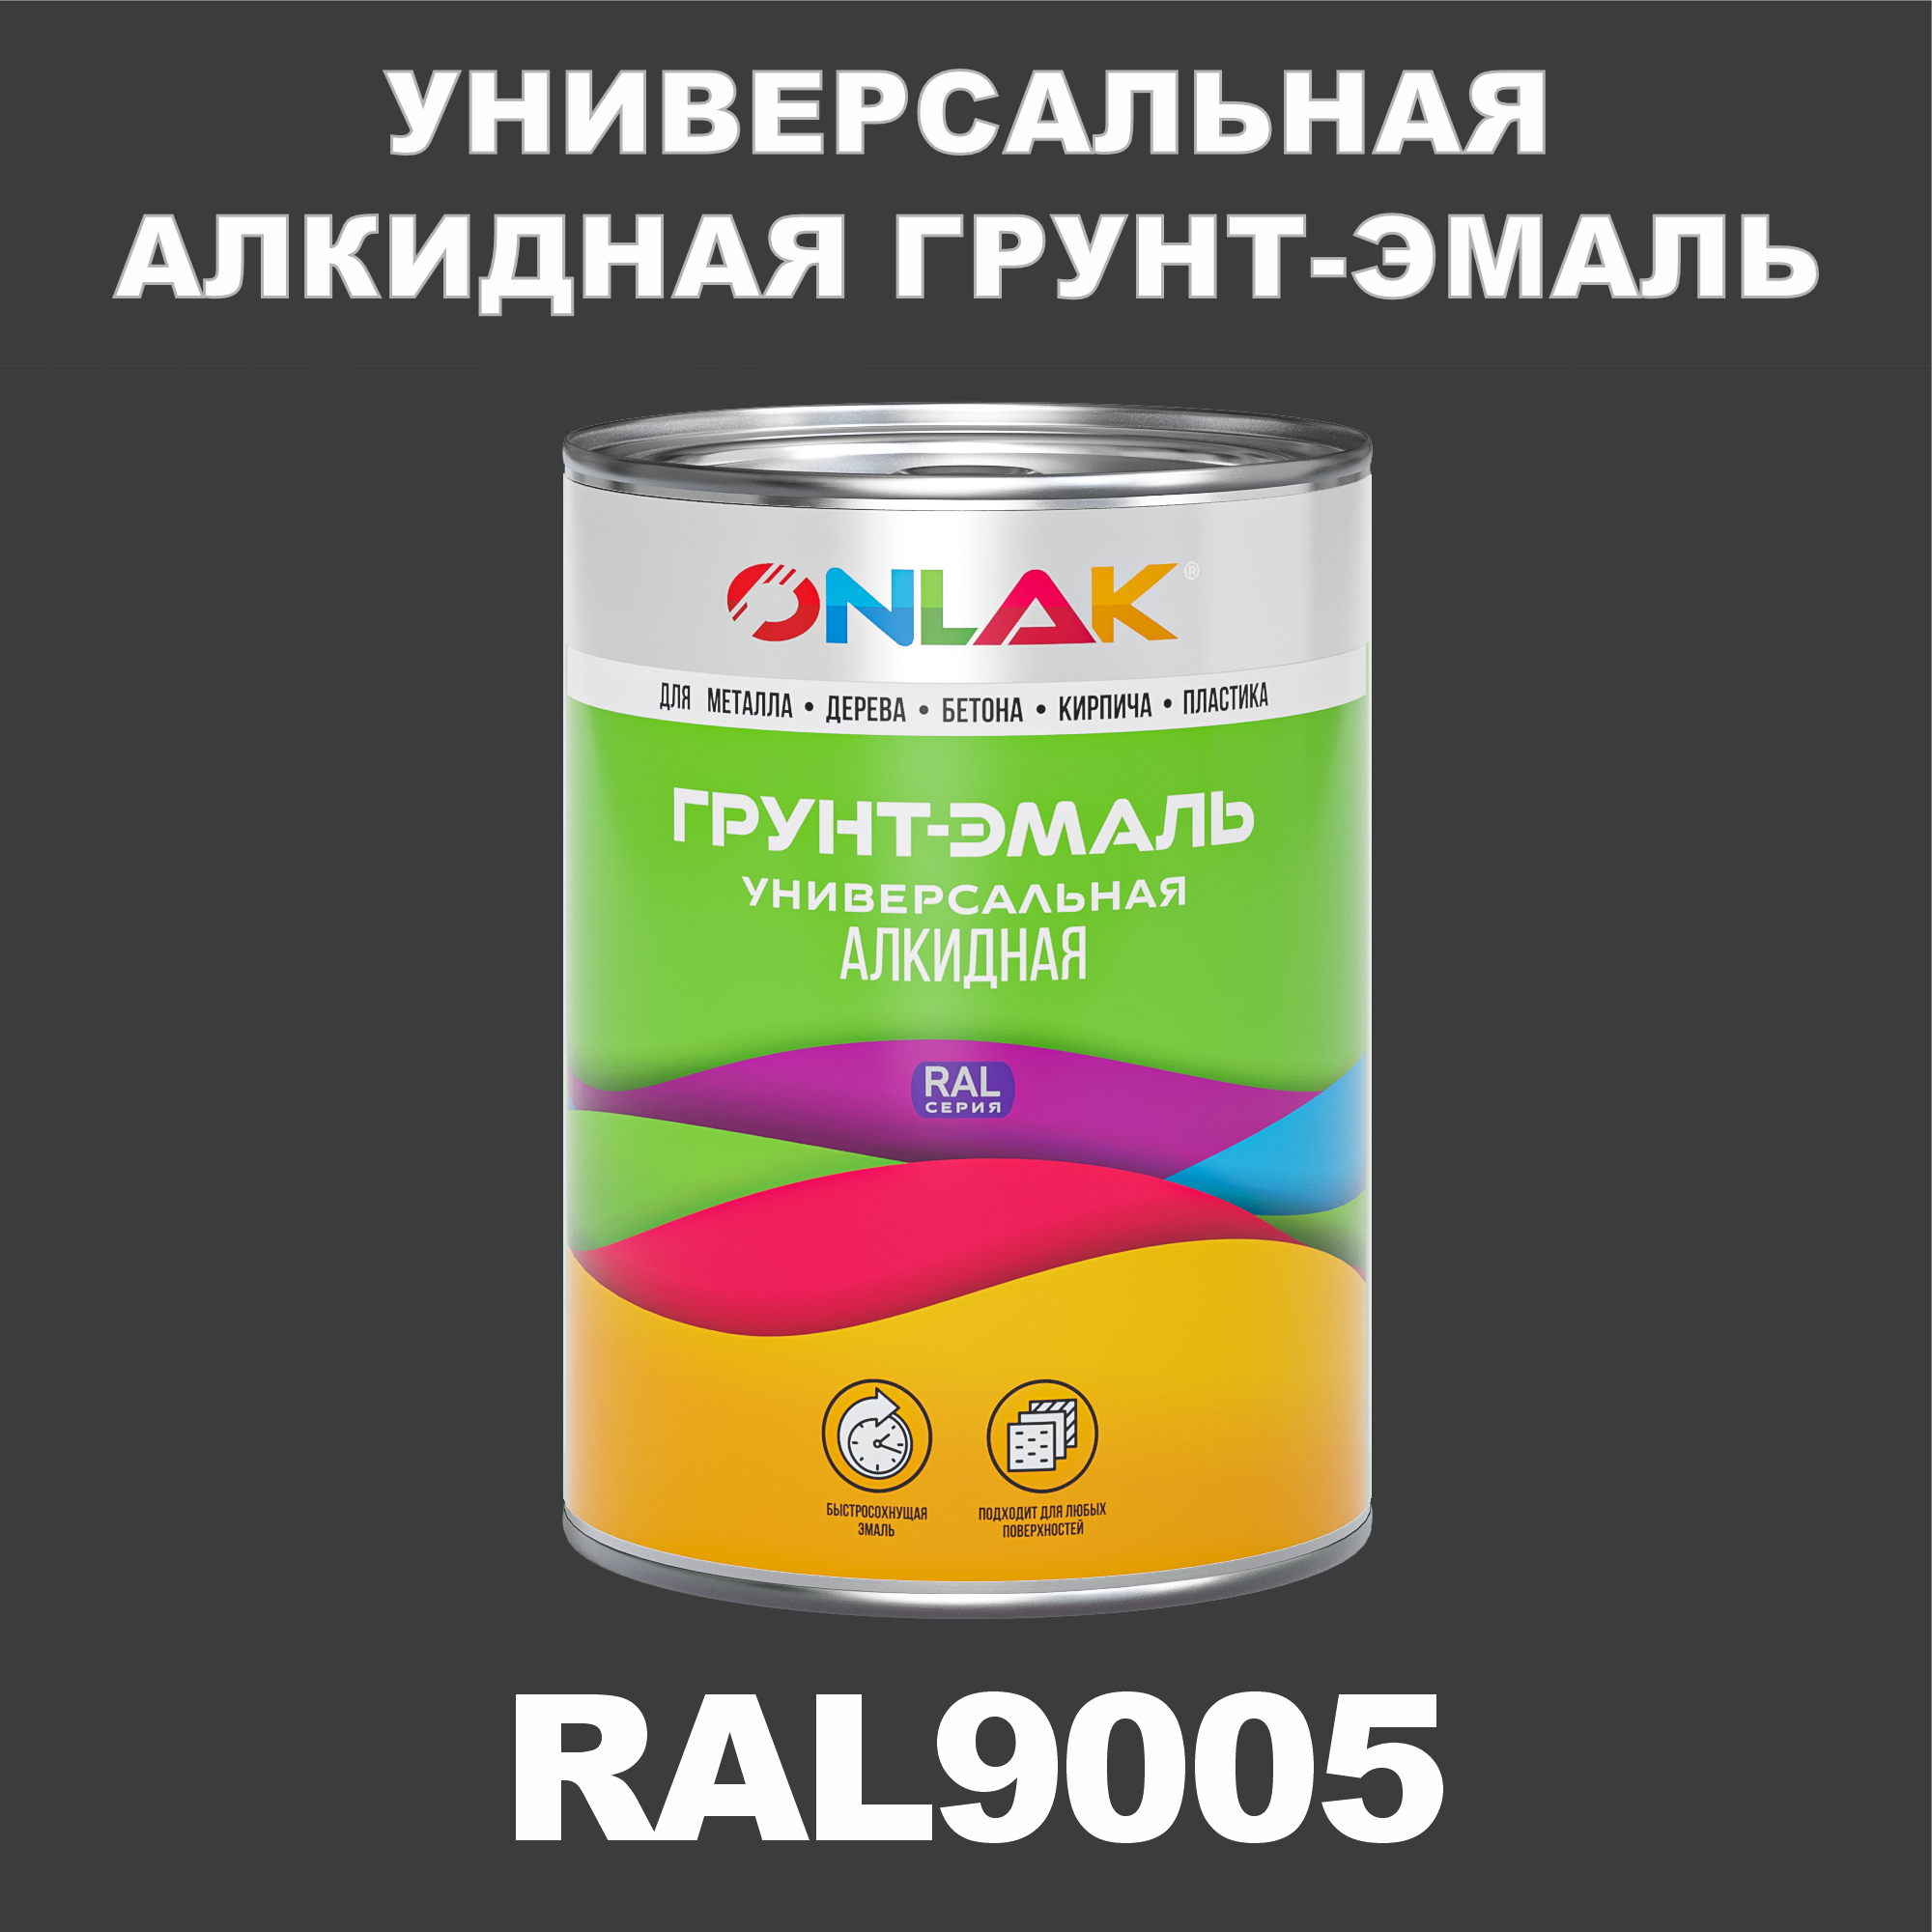 Грунт-эмаль ONLAK 1К RAL9005 антикоррозионная алкидная по металлу по ржавчине 1 кг грунт эмаль палитра по ржавчине алкидная коричневая 1 9 кг